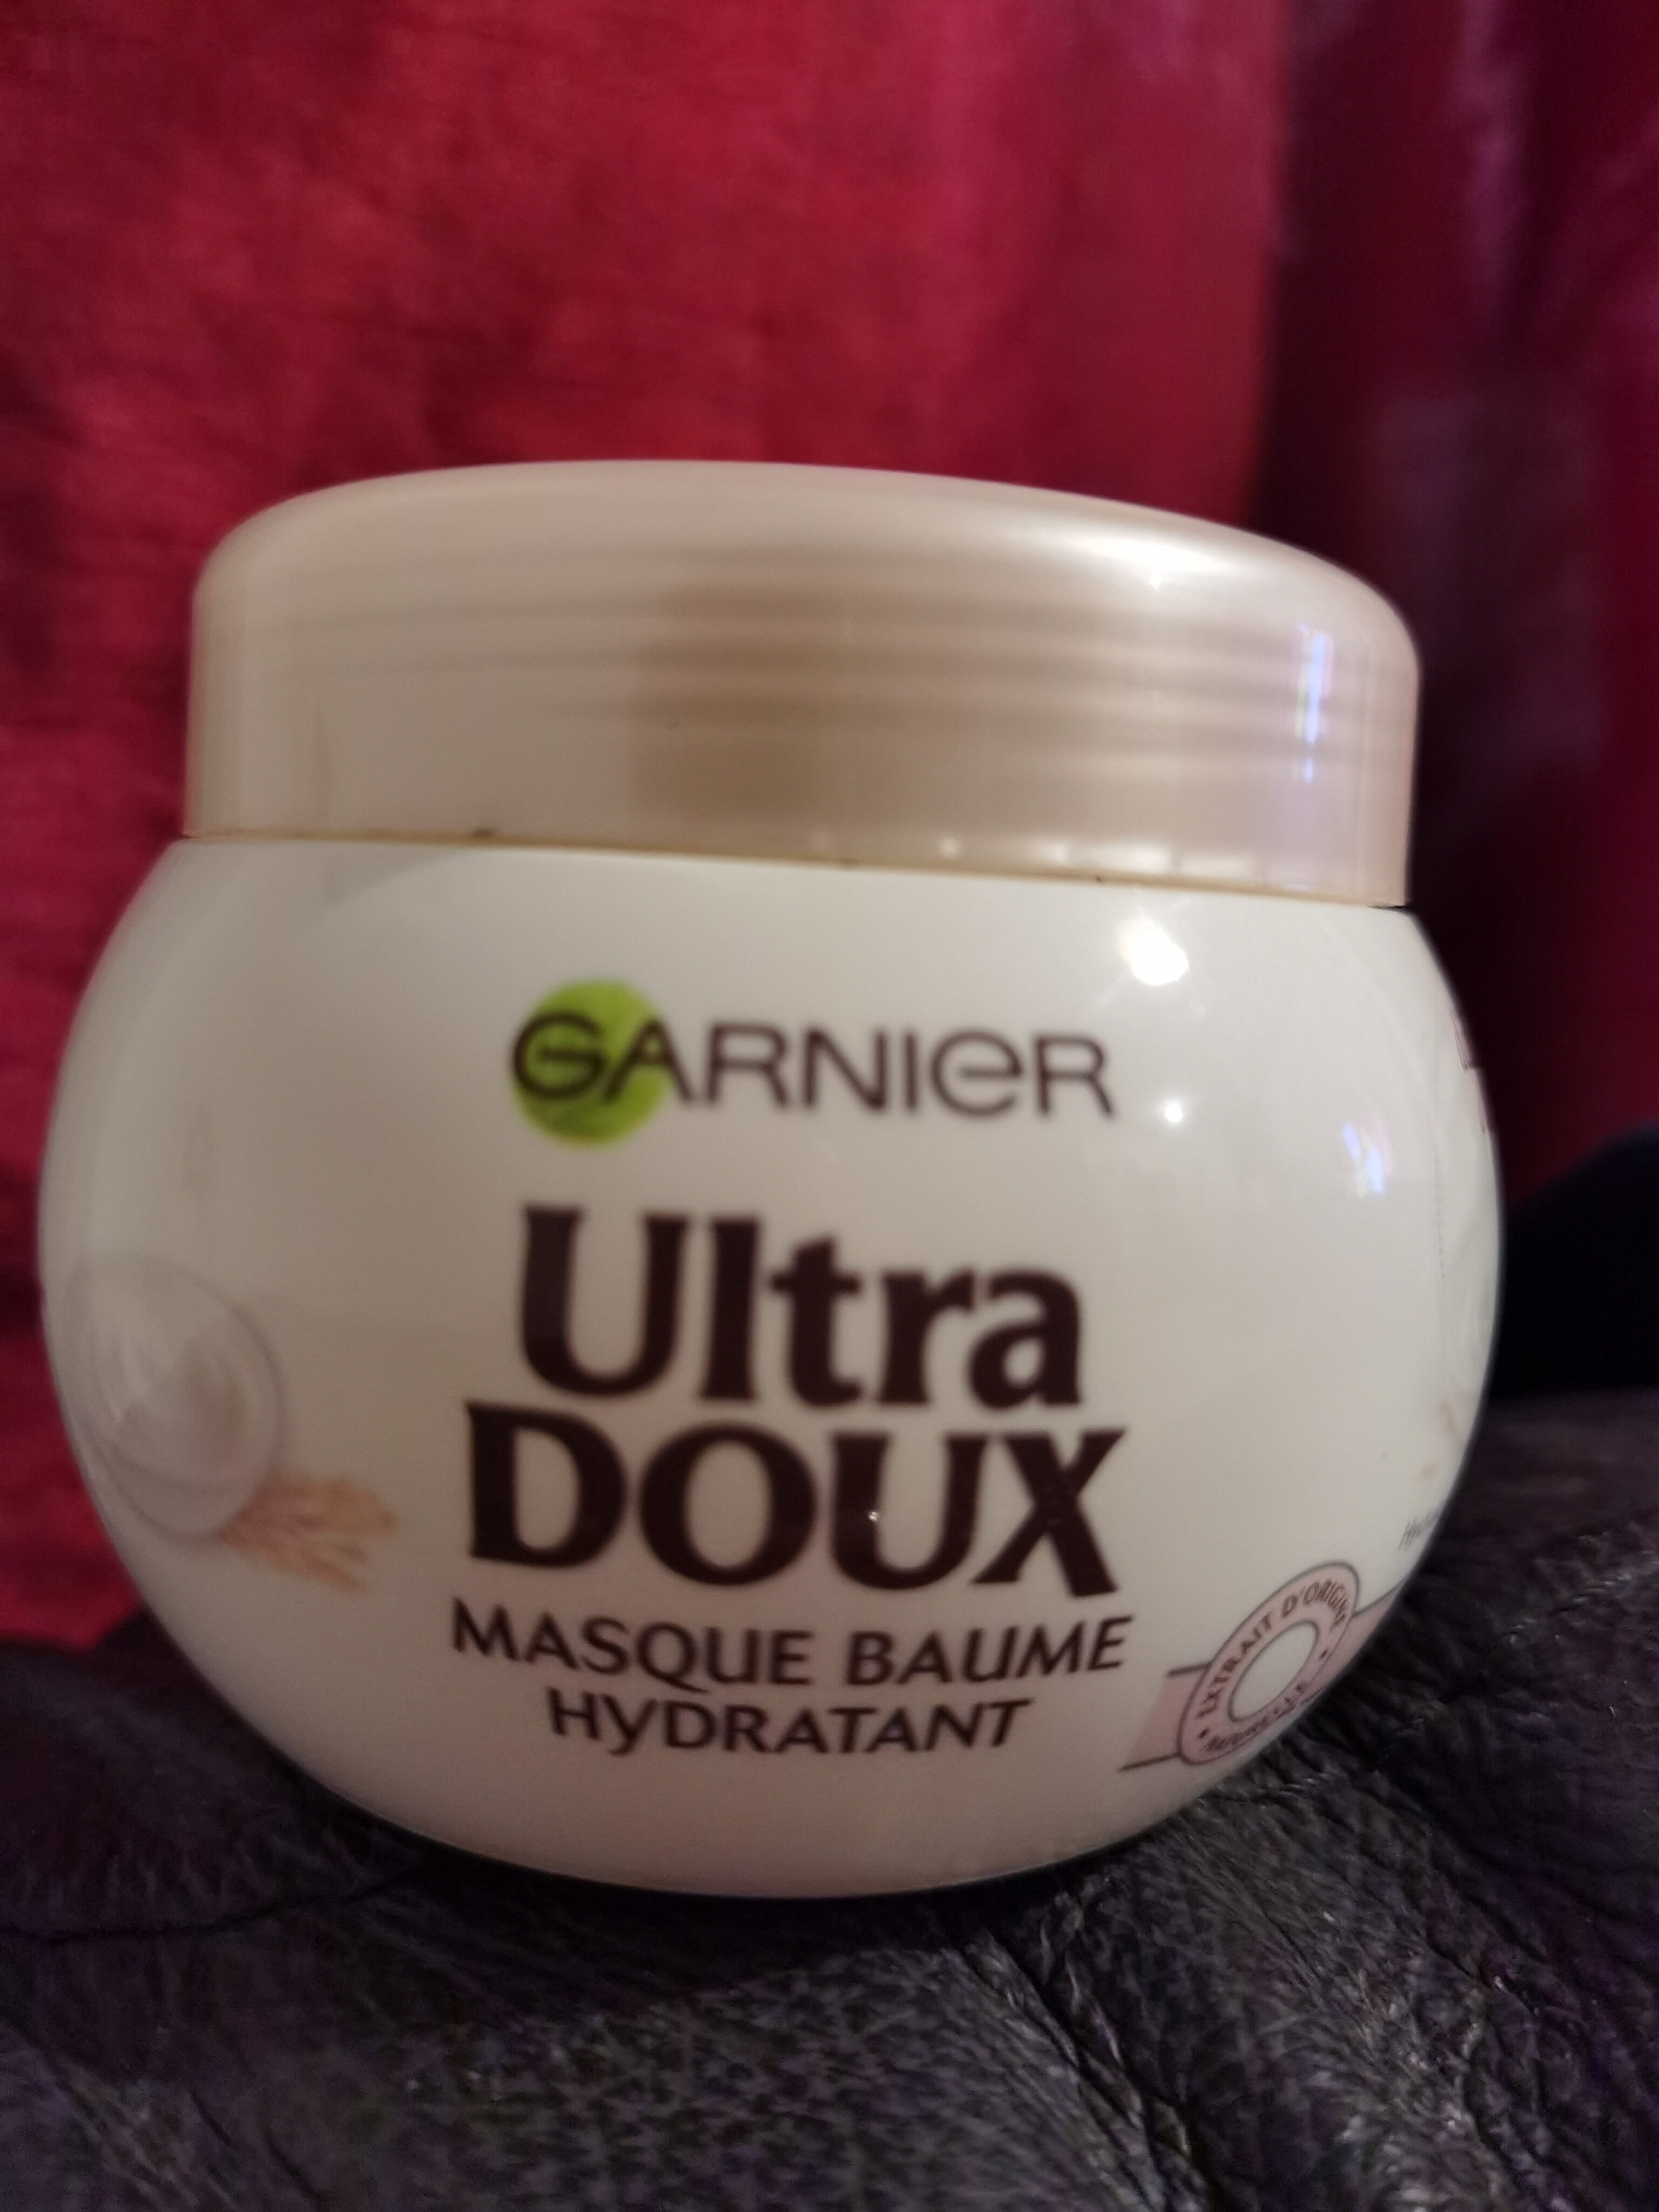 Ultra doux masque baume hydratant - Produit - fr